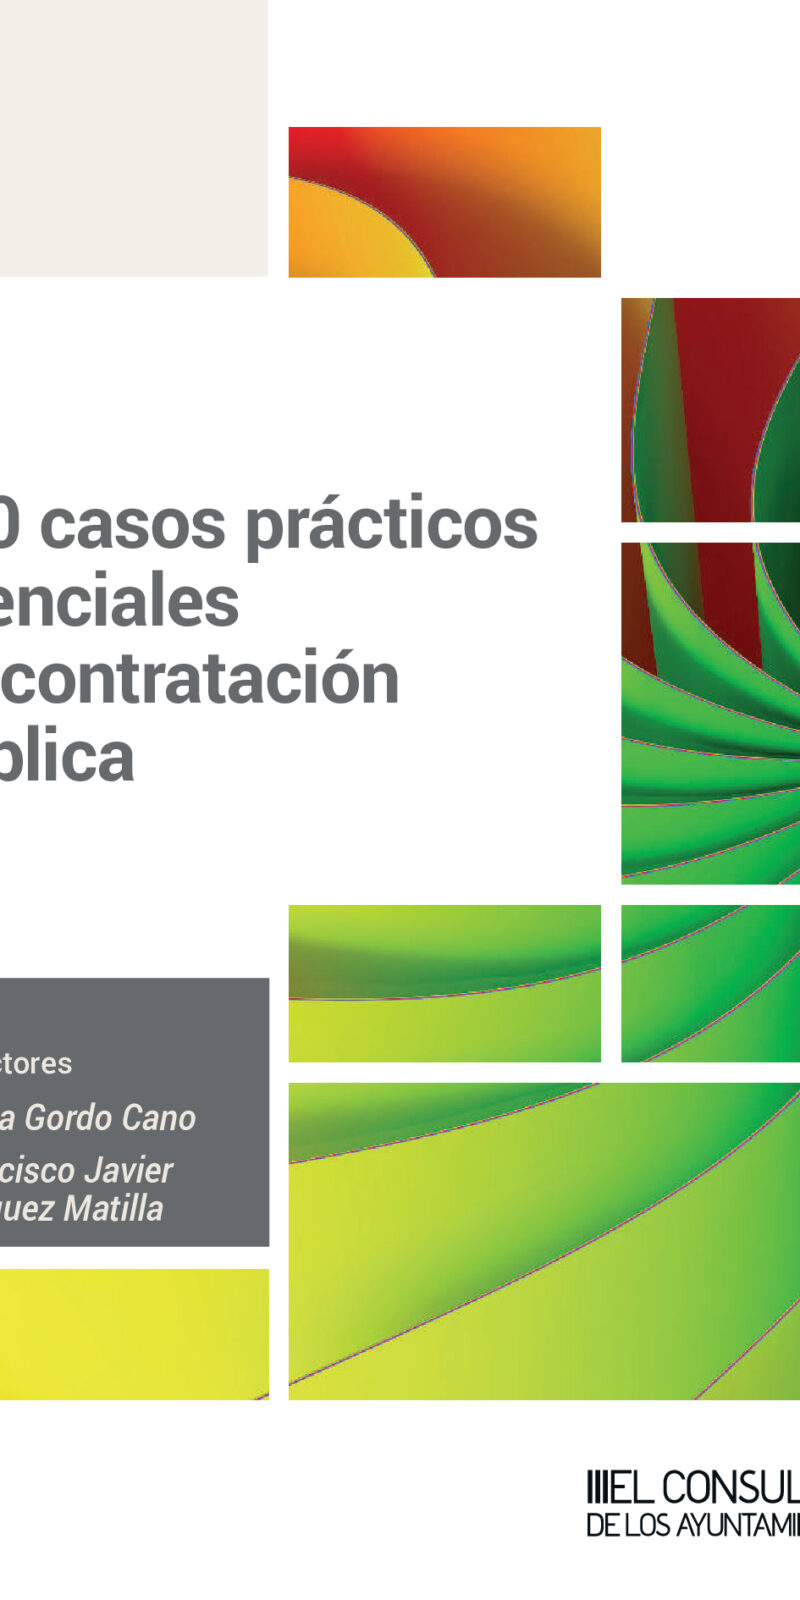 100 casos prácticos esenciales en contratación pública